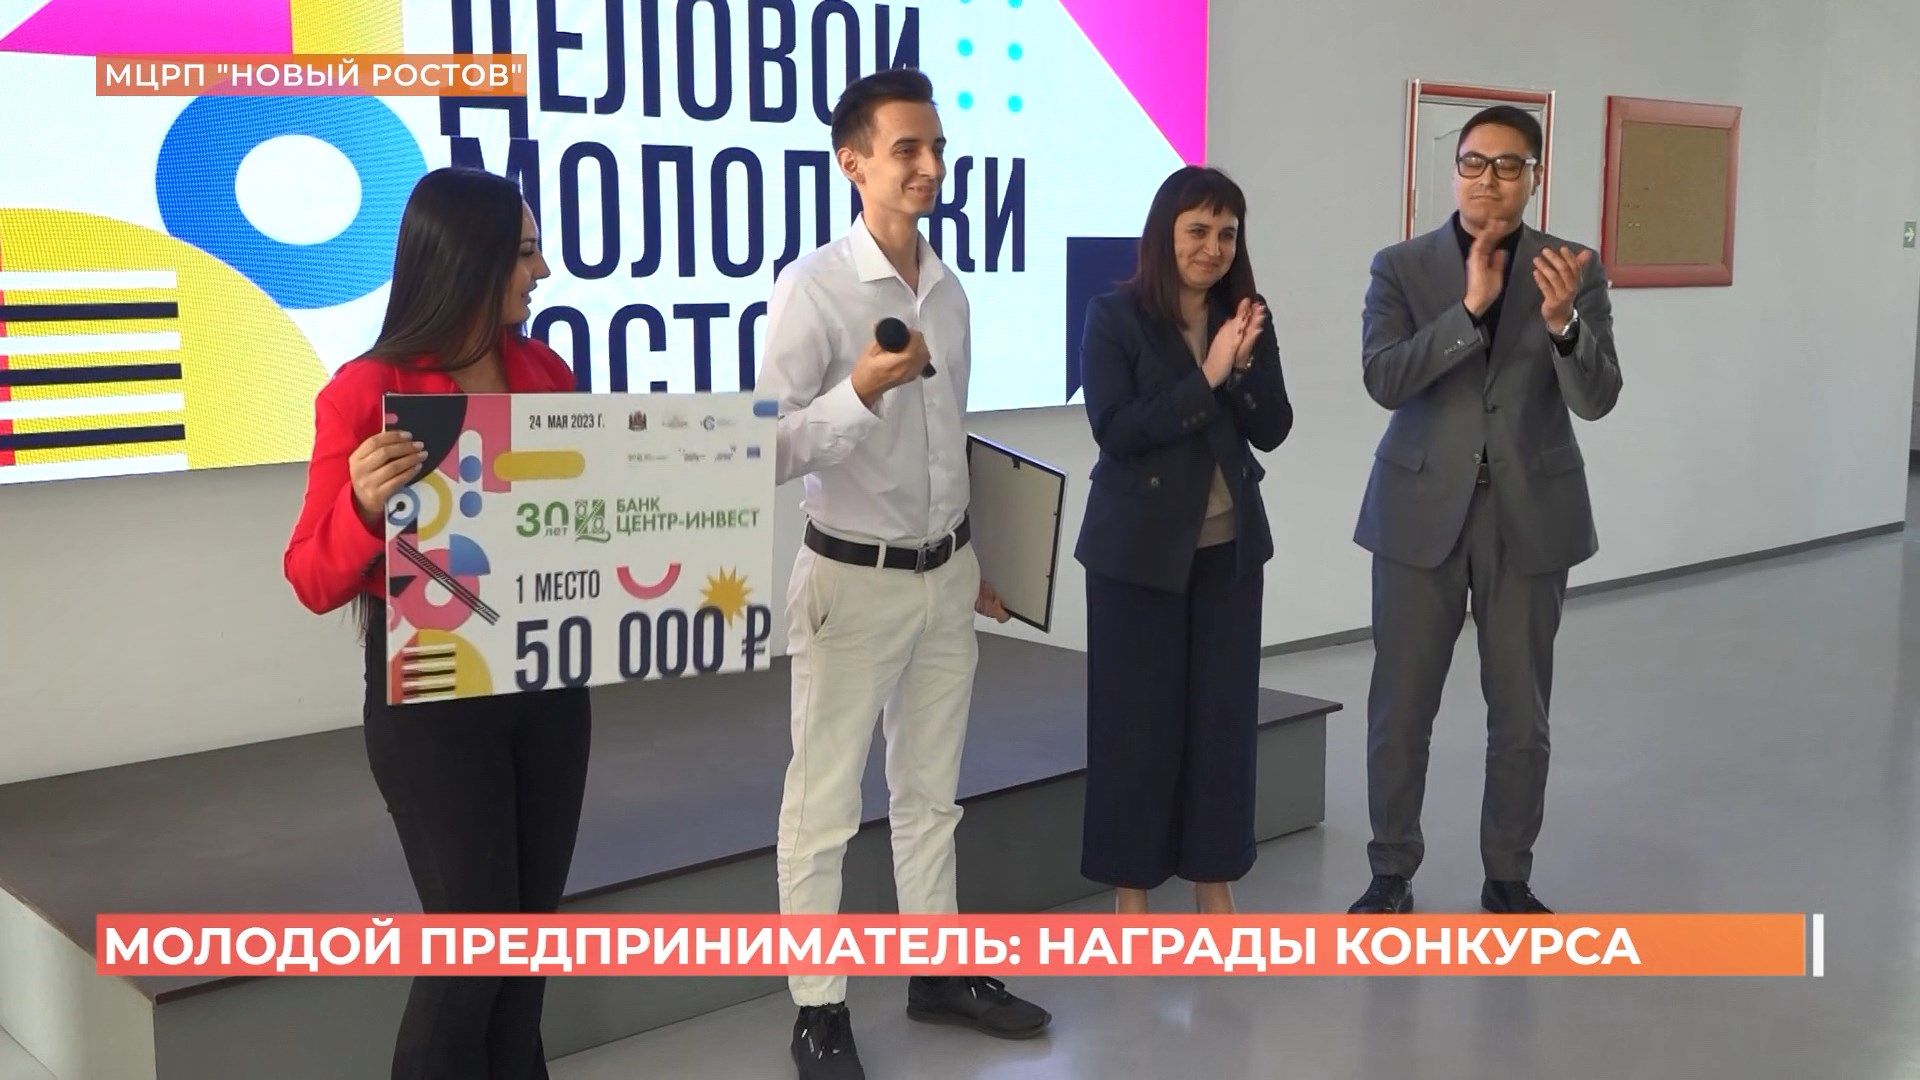 Лучшим молодым предпринимателем Ростова признан производитель мочалок